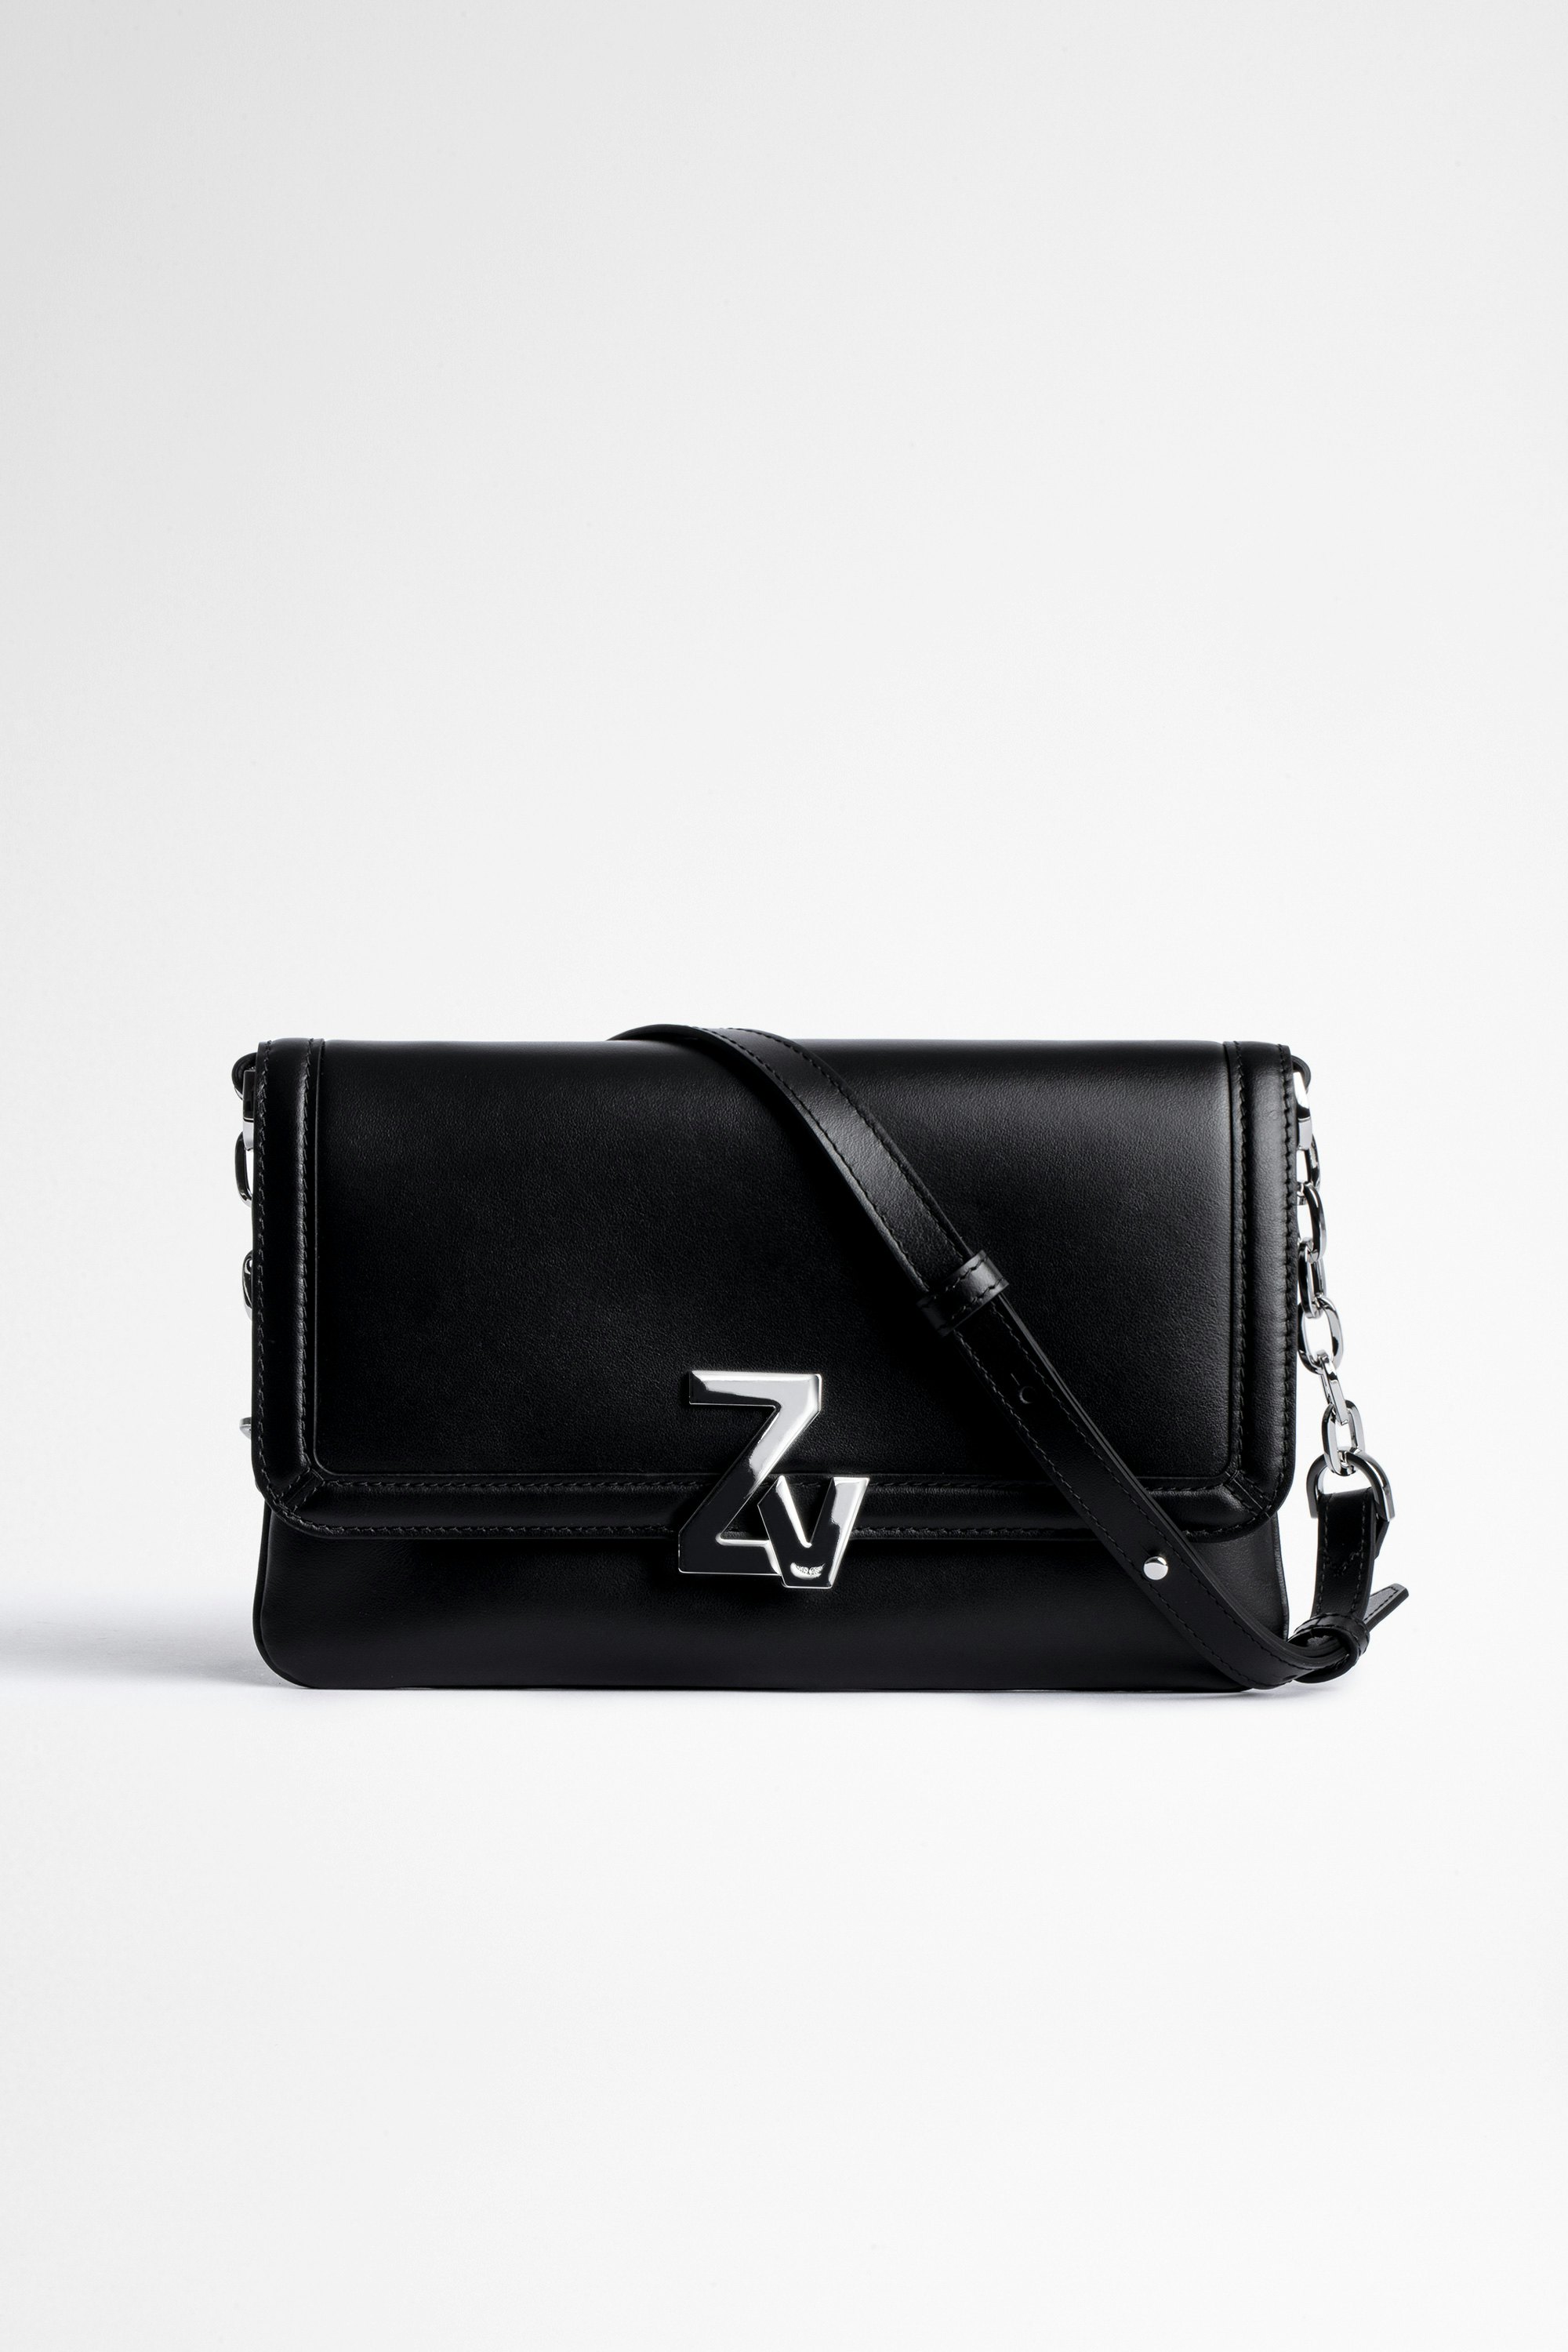 Tasche ZV Initiale La Clutch Damen-Clutch aus schwarzem Glattleder mit silberfarbenem ZV